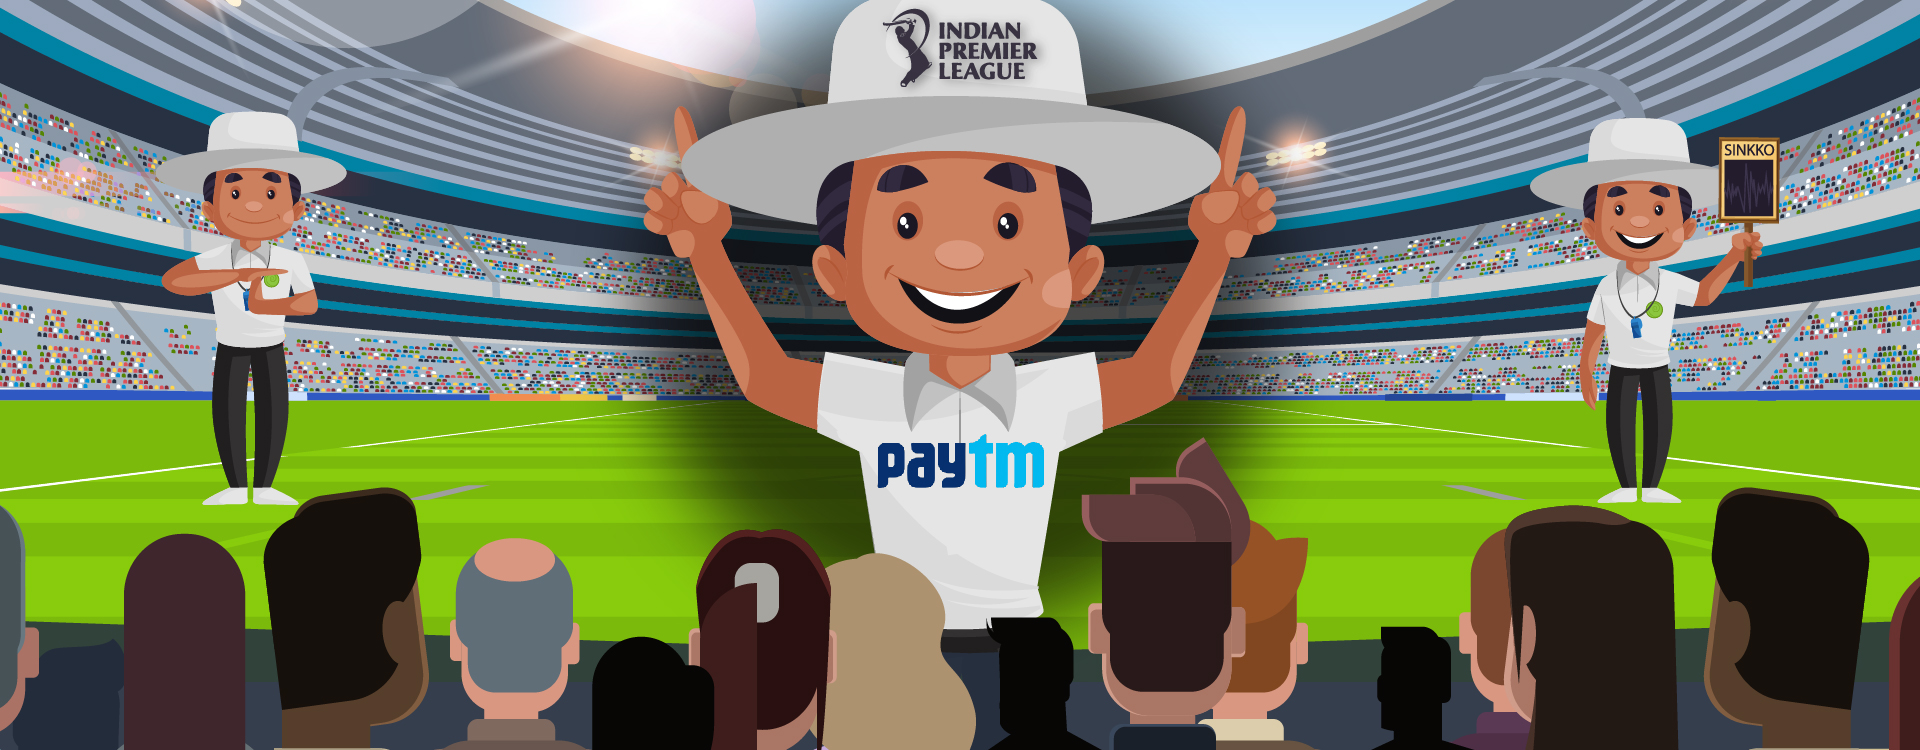 India’s Number 1 Unicorn Paytm is IPL’s Umpire Partner